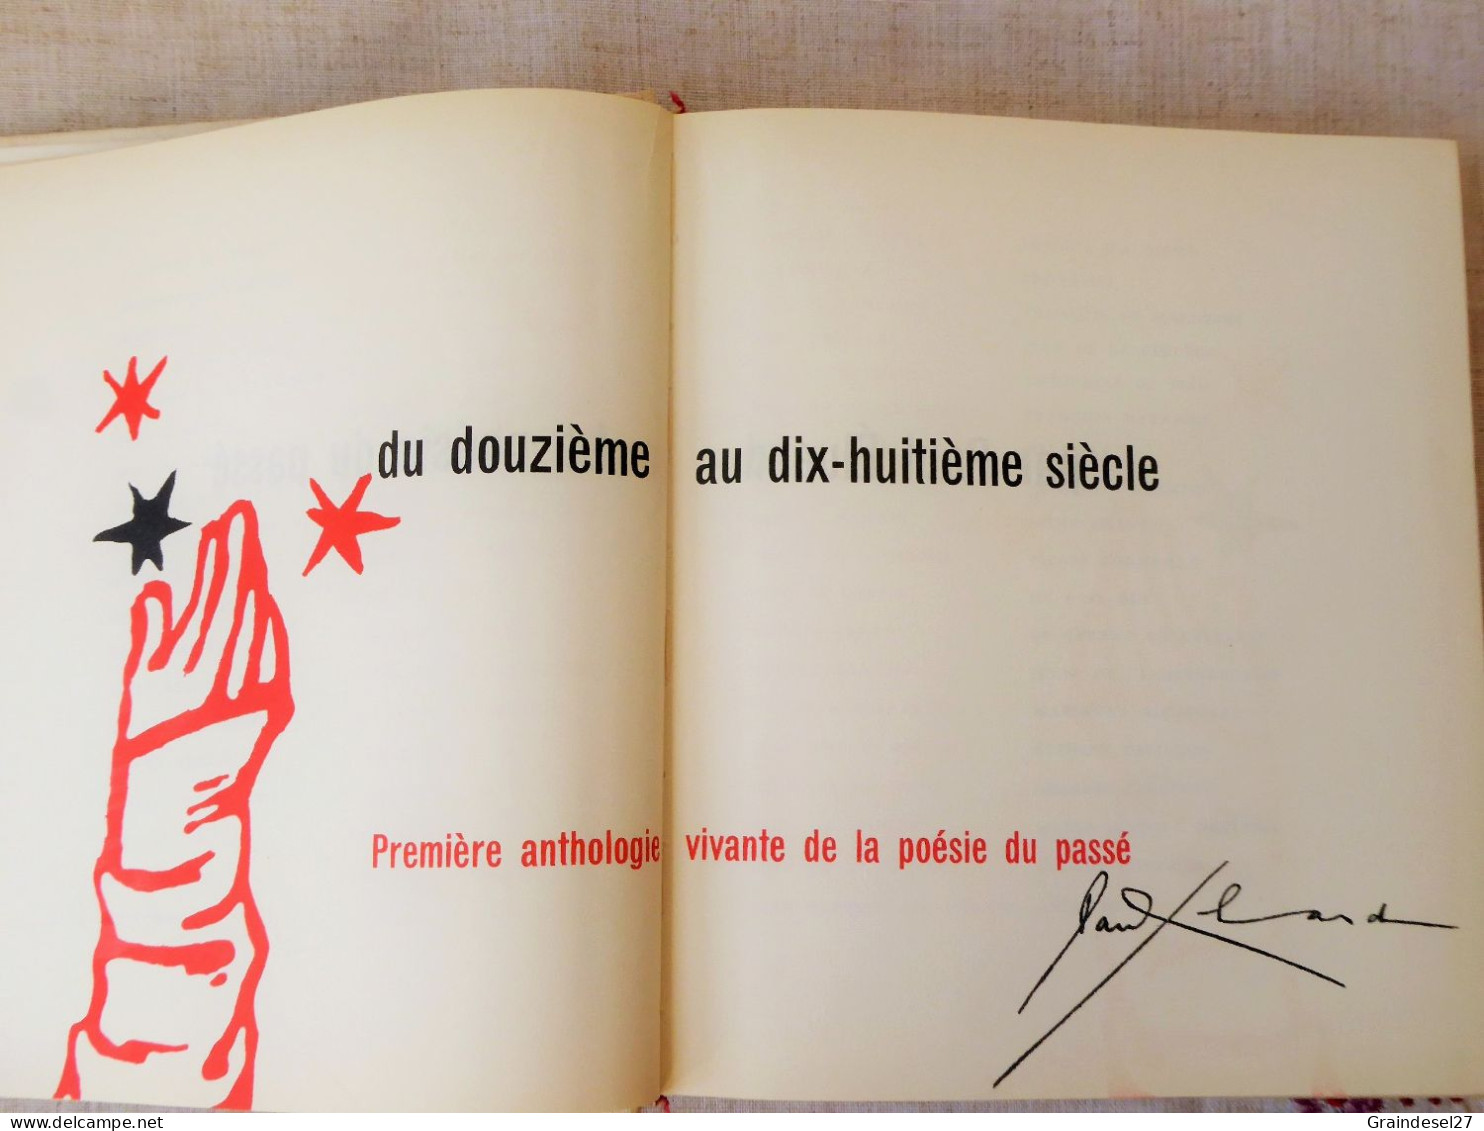 Anthologie de la poésie du passé, le XVI e siècle  de Paul Eluard, numéroté, édition Le Club français du livre 1954